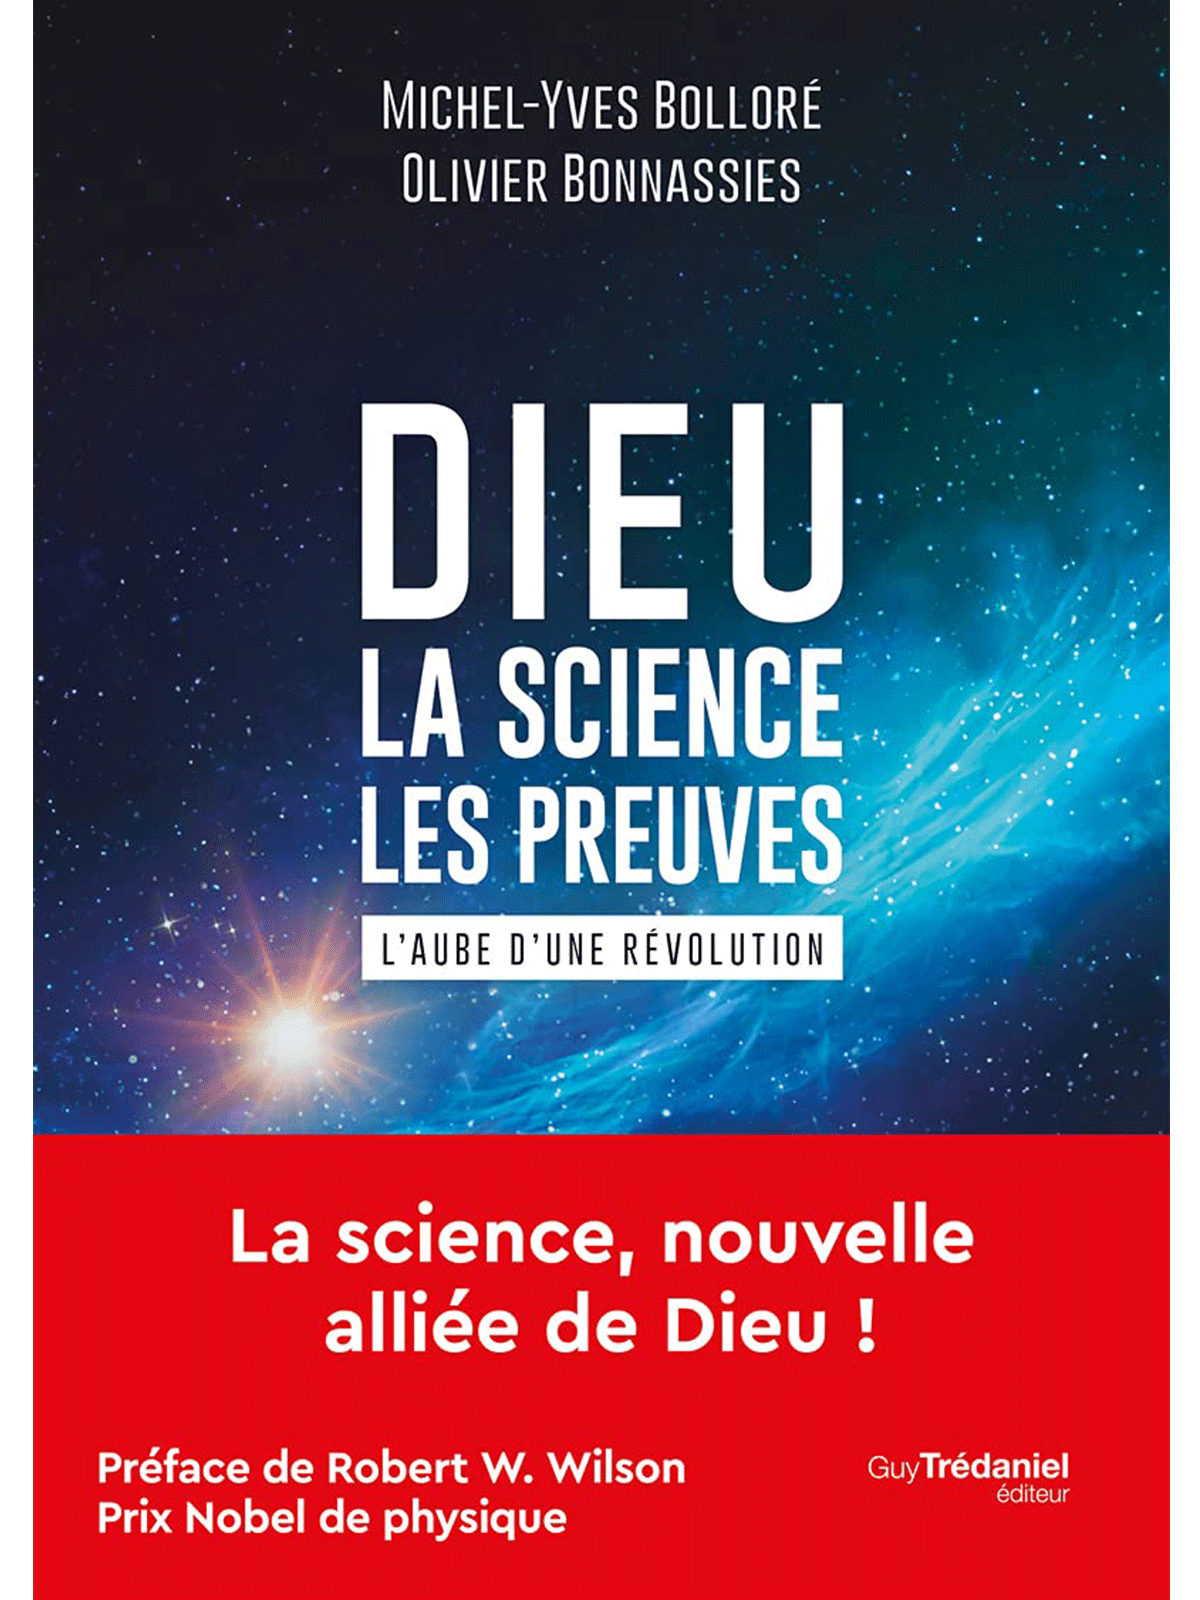 Michel-Yves Bolloré et Olivier Bonnassies : Dieu - La science Les preuves